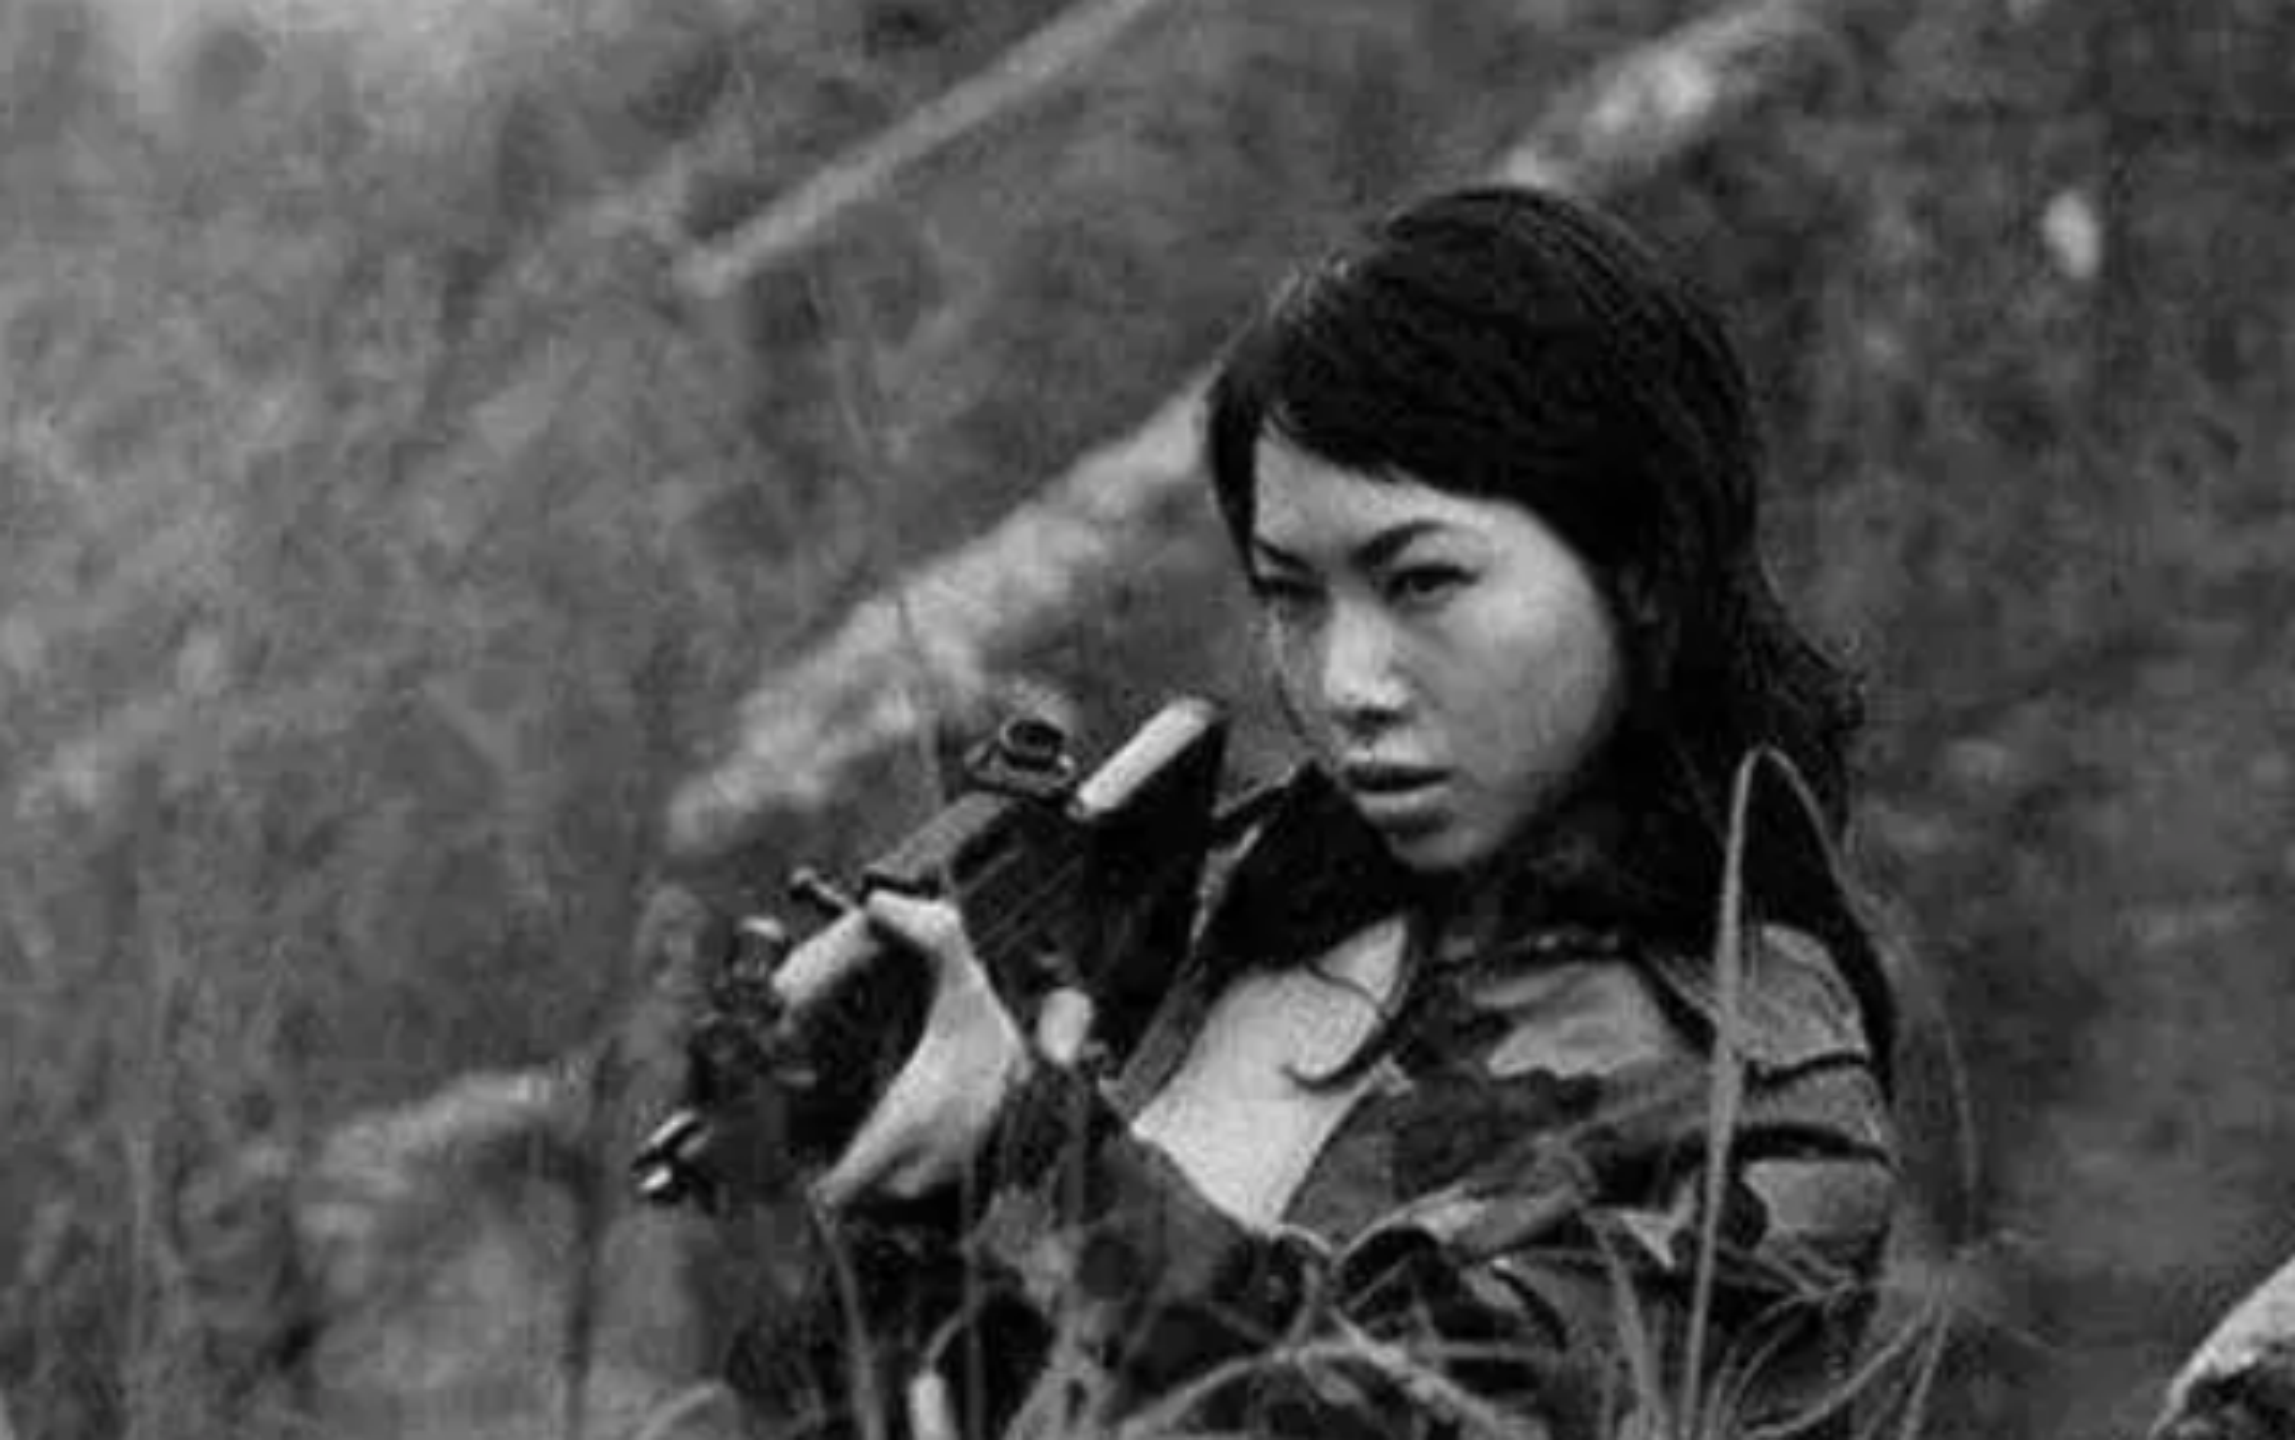 长条山激战:越南女兵全部阵亡,无一投降,解放军人道收尸埋葬